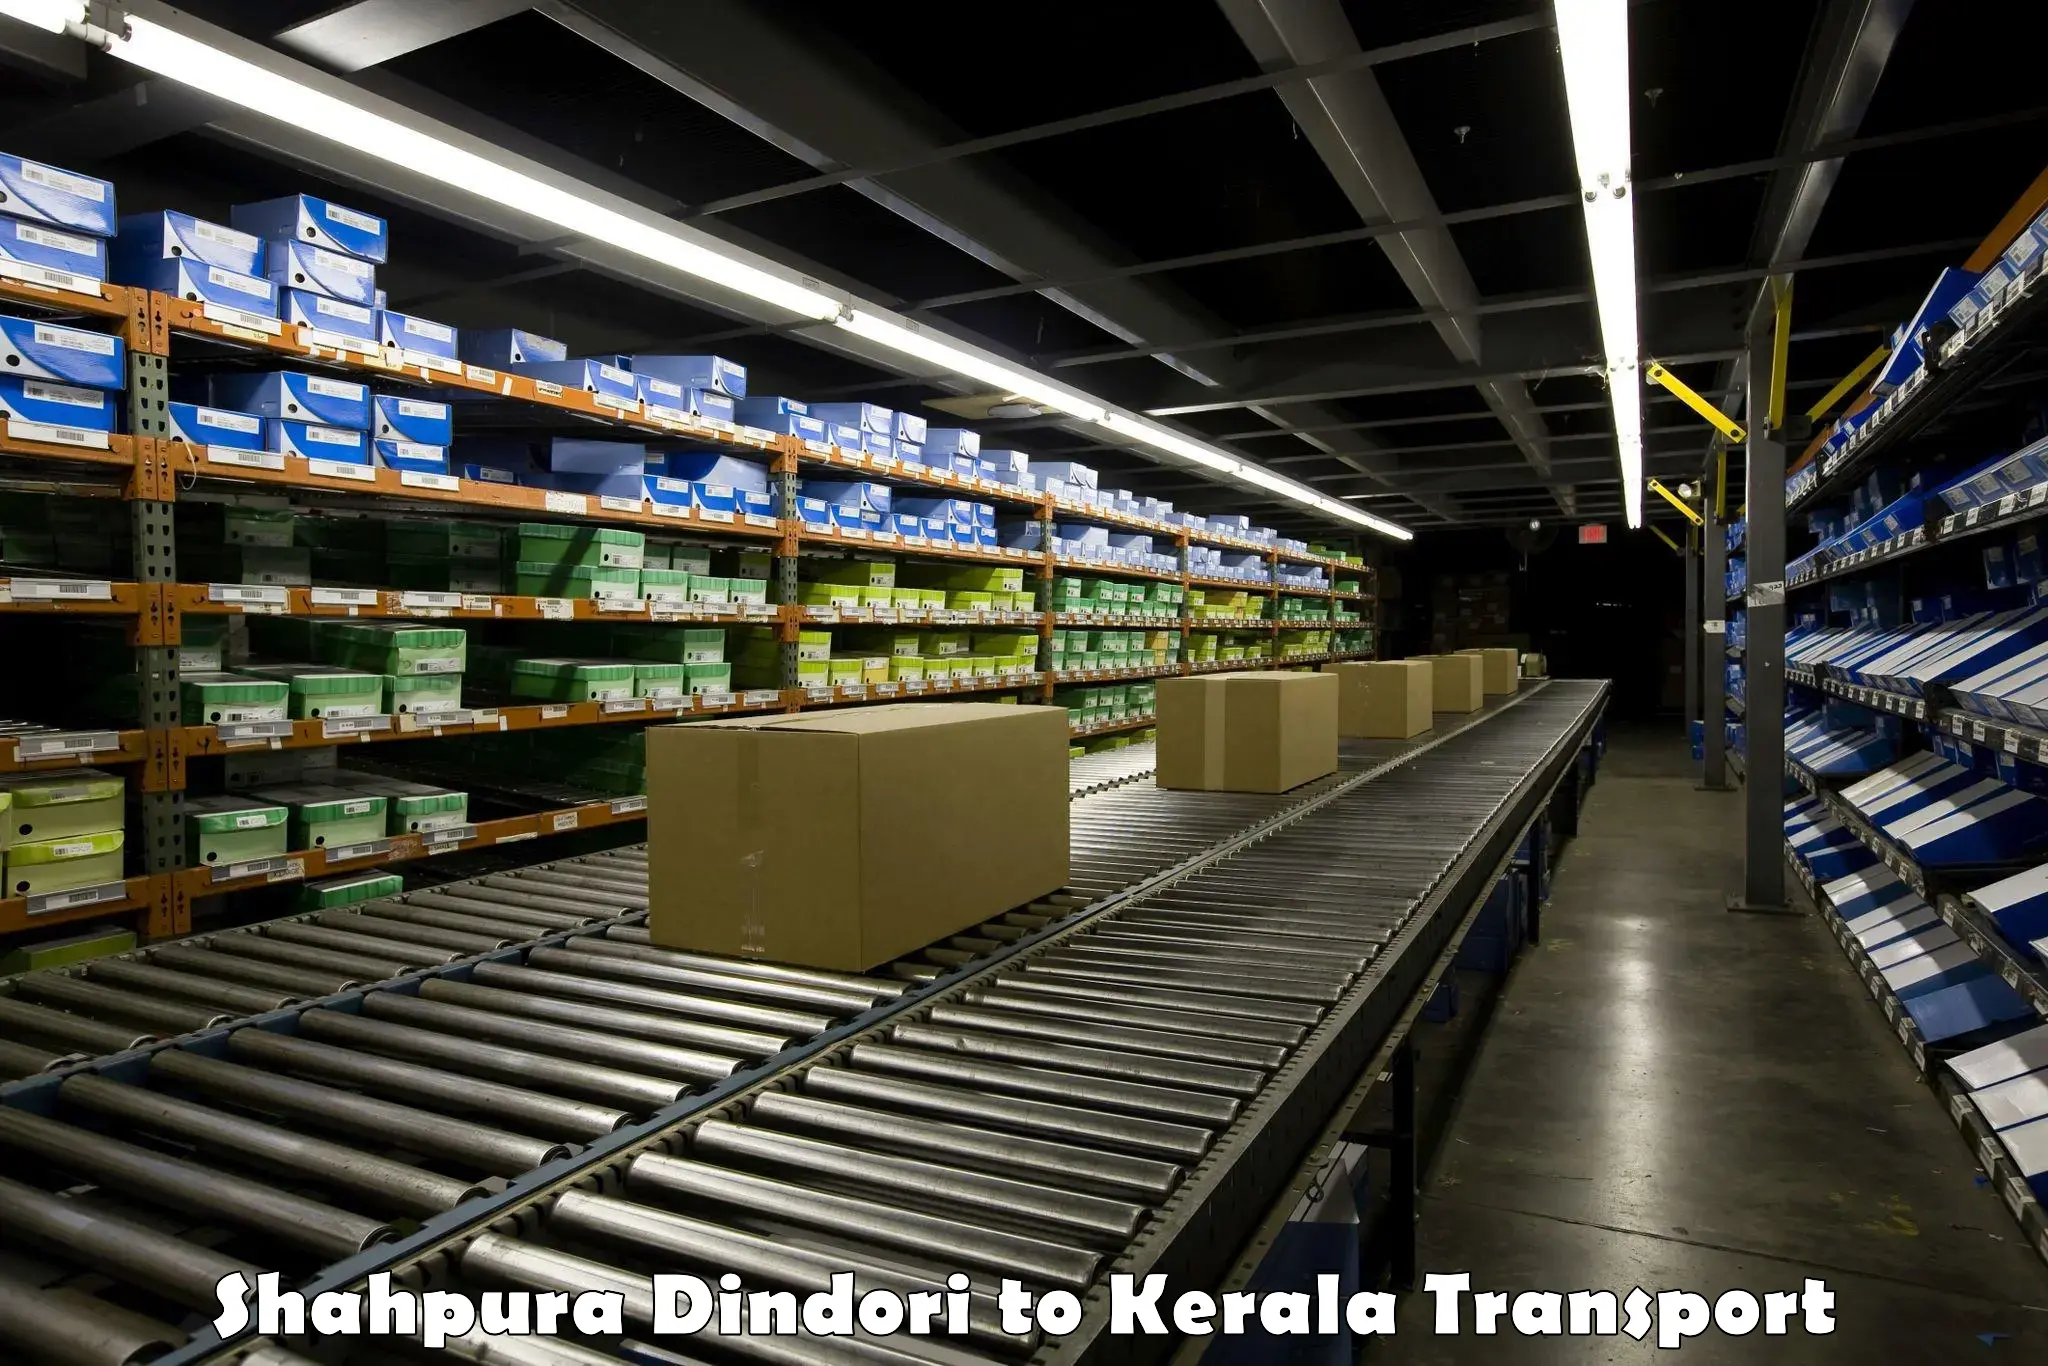 Truck transport companies in India Shahpura Dindori to Kakkayam